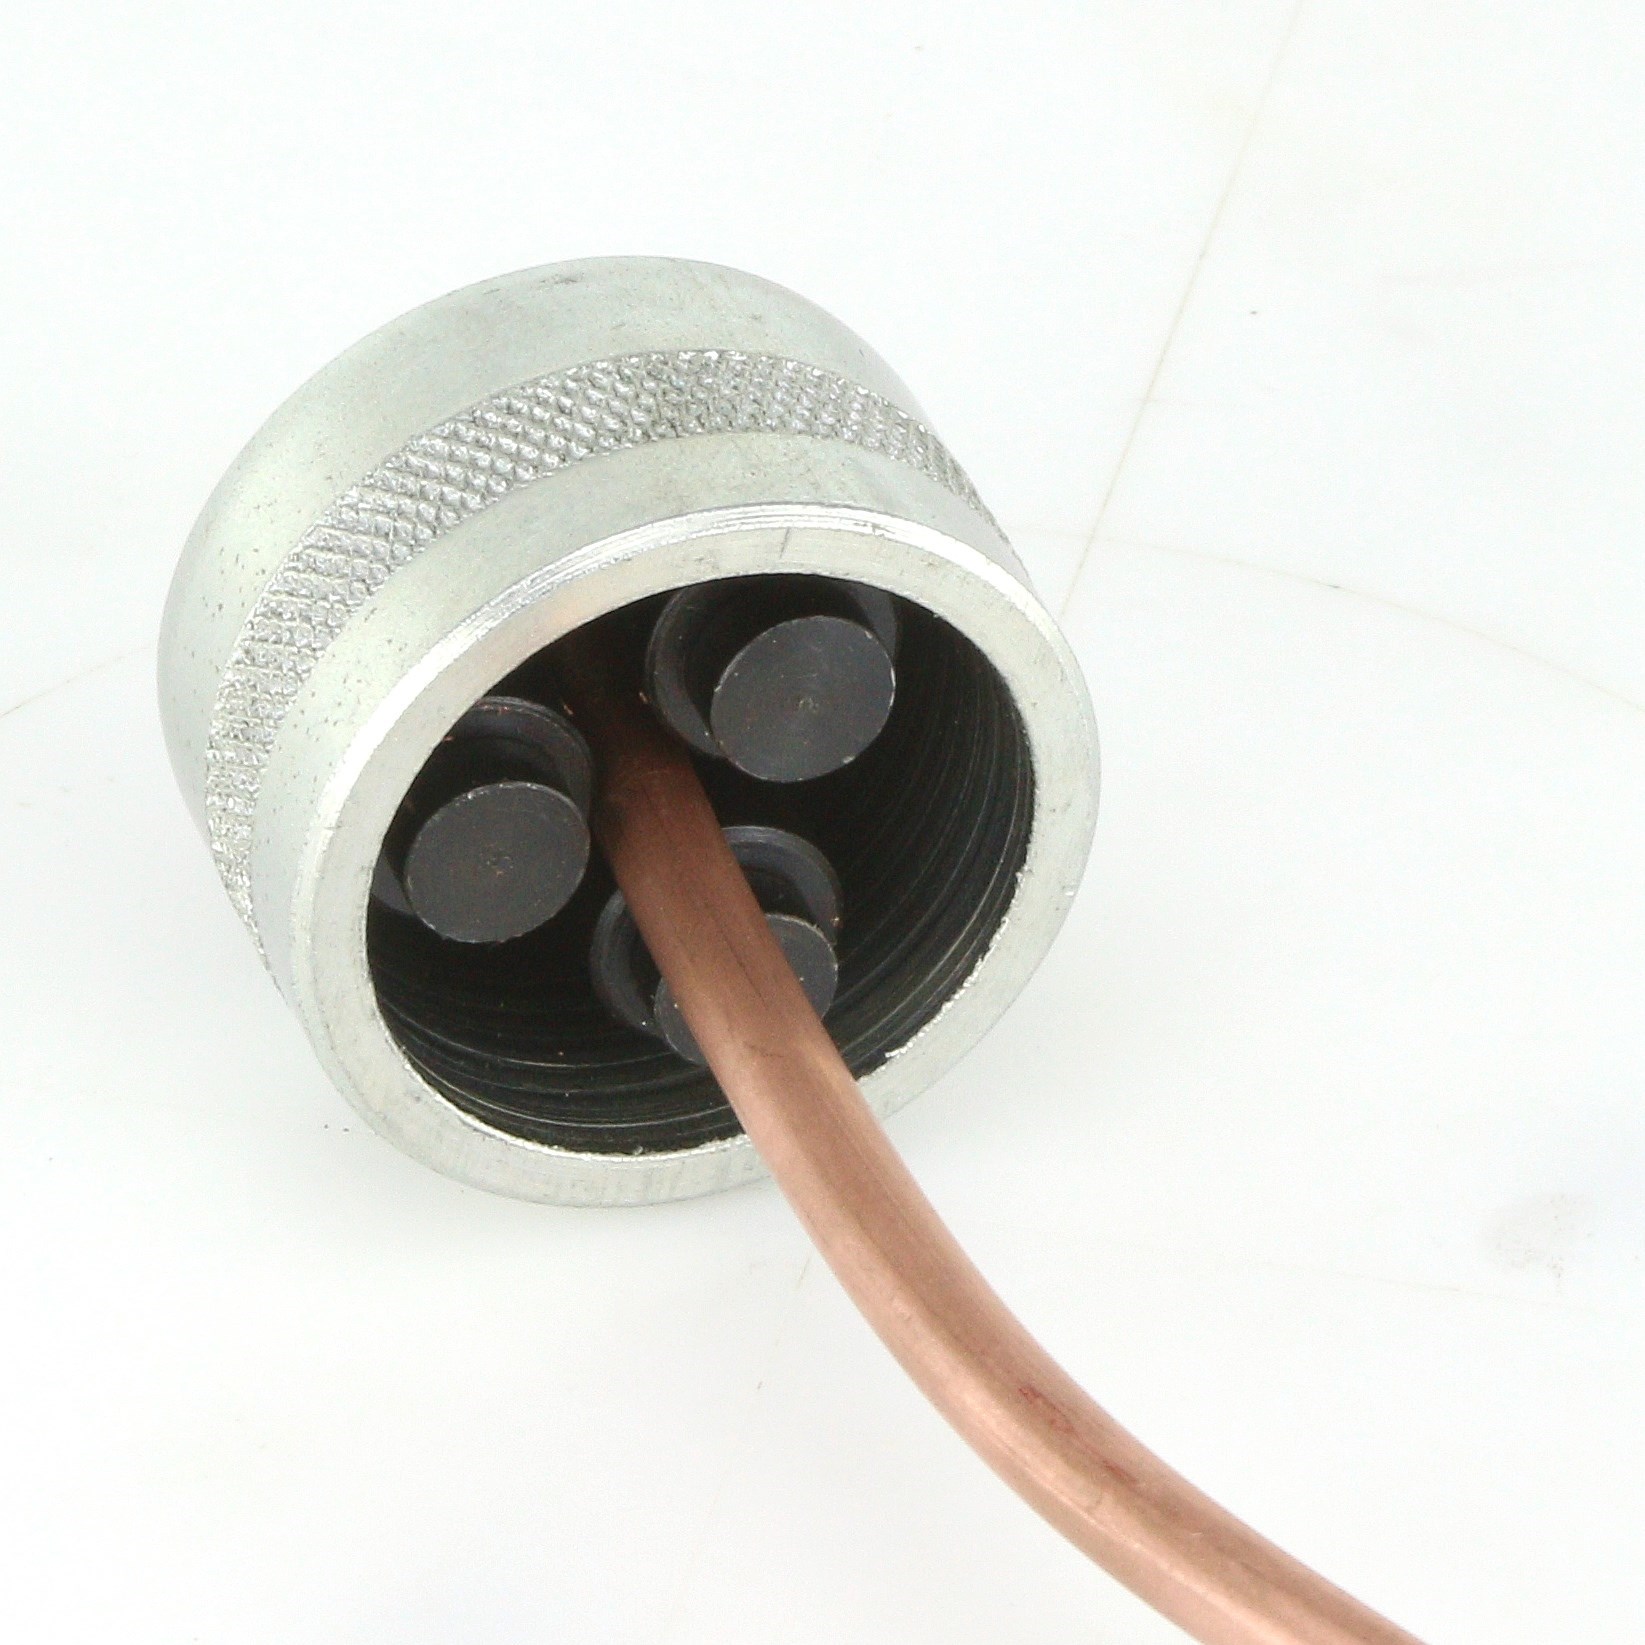 Inside & Outside Brake Line Tubing Deburring Tool 1/8-1/2 Stainless OEM Copper C-3-3 